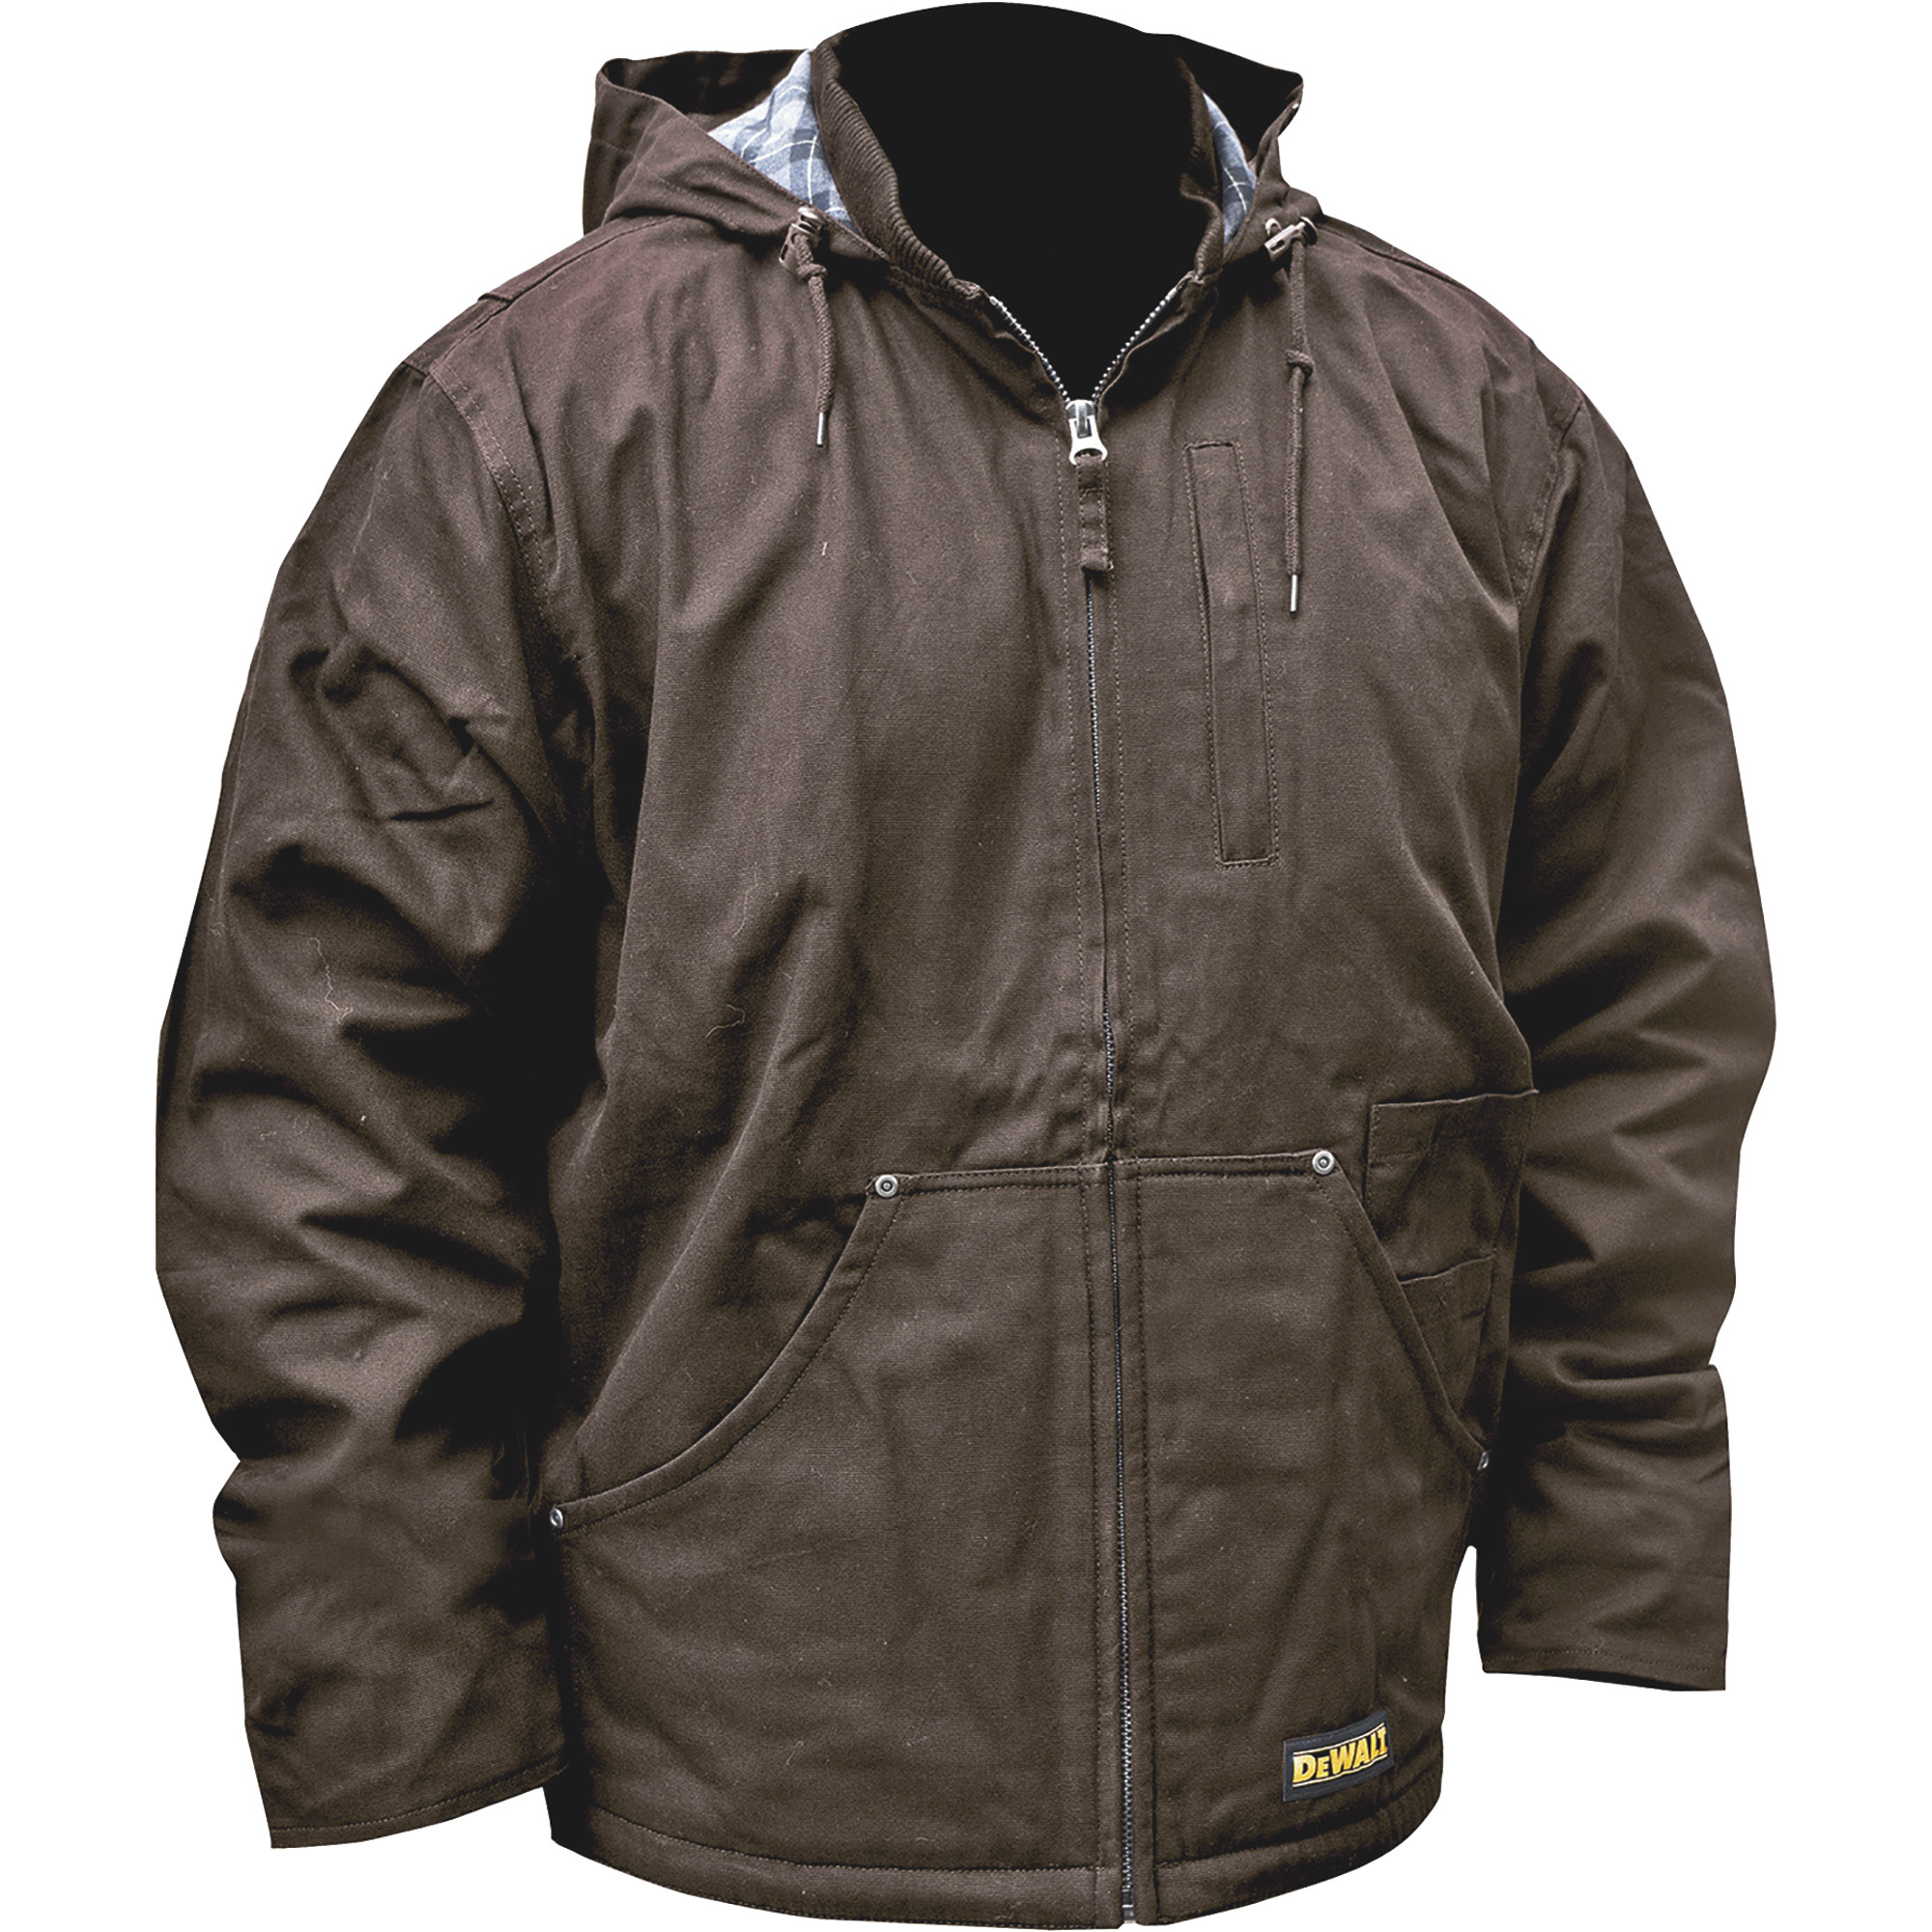 DEWALT Men's Heated Heavy-Duty Hooded Duck Jacket with Fleece Lining â Tobacco, XL, Model DCHJ076AT1D-L